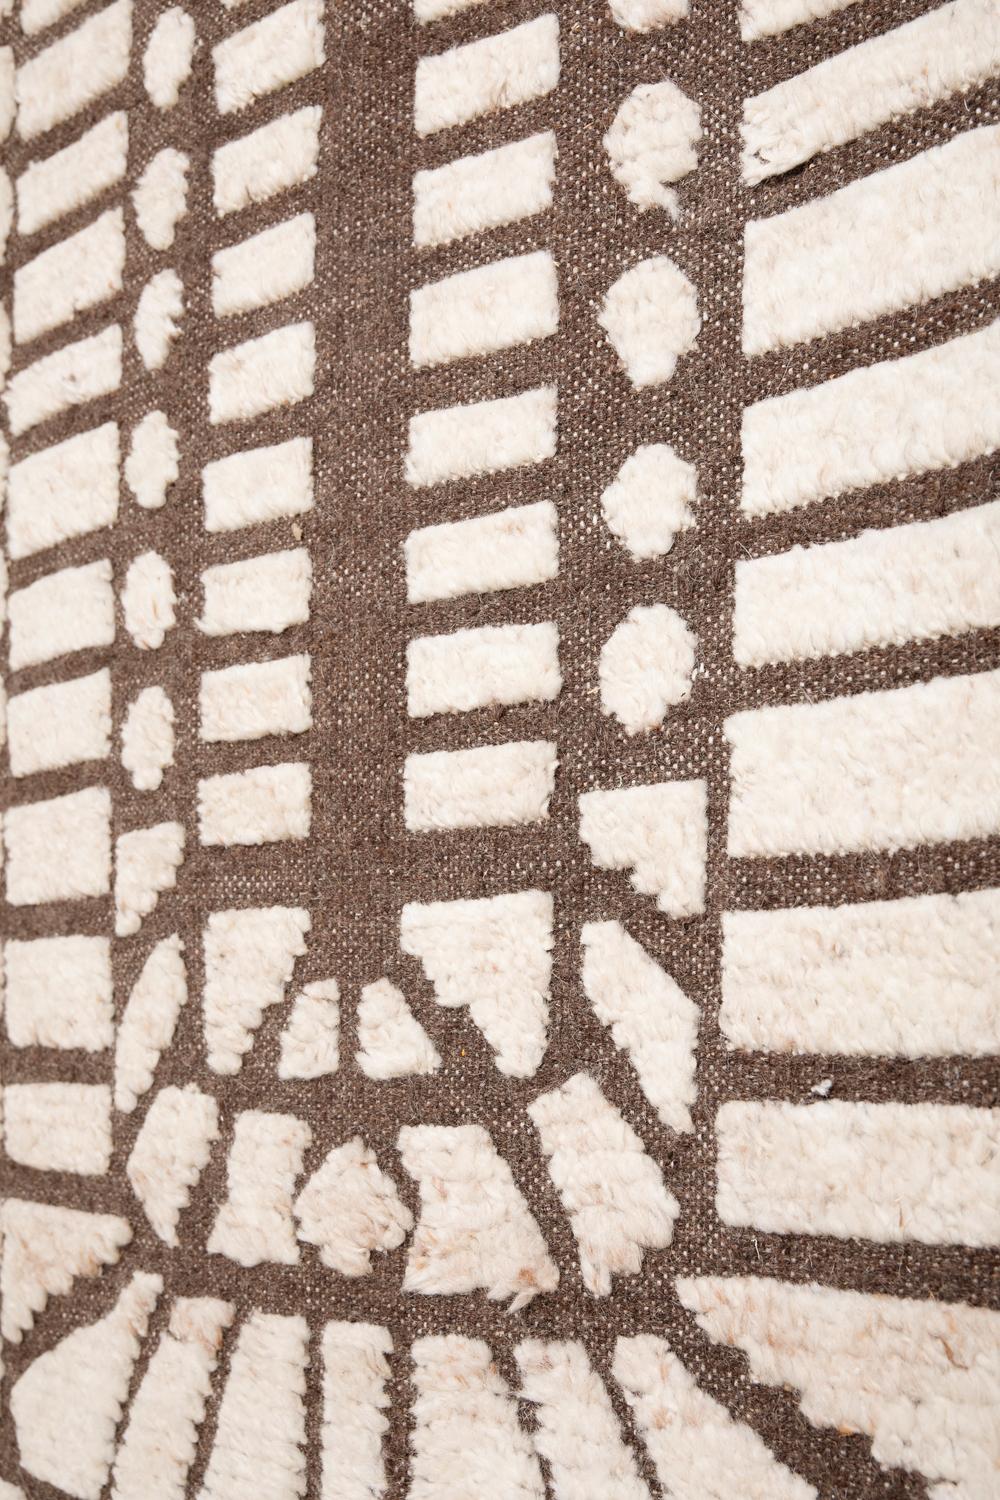 Ce tapis a été noué à la main de manière éthique dans les fils de laine mérinos les plus fins par des artisans du nord de l'Inde. La partie brune a une épaisseur de 6 mm et la partie blanche de 15 mm.
Chaque tapis est noué à la main avec des détails